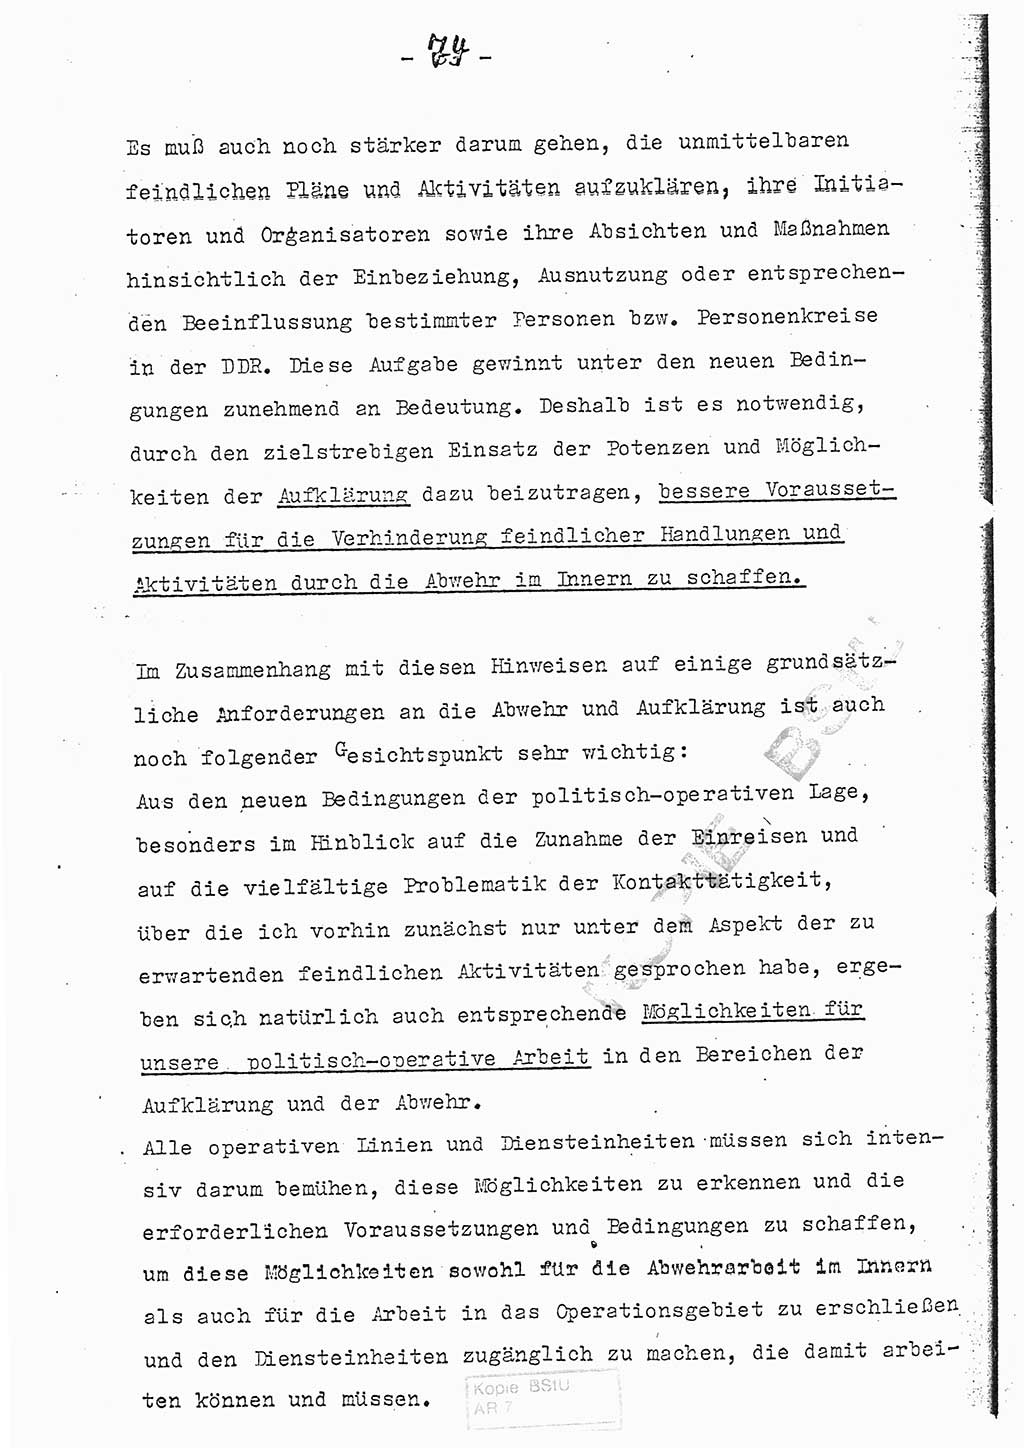 Referat (Entwurf) des Genossen Minister (Generaloberst Erich Mielke) auf der Dienstkonferenz 1972, Ministerium für Staatssicherheit (MfS) [Deutsche Demokratische Republik (DDR)], Der Minister, Geheime Verschlußsache (GVS) 008-150/72, Berlin 25.2.1972, Seite 74 (Ref. Entw. DK MfS DDR Min. GVS 008-150/72 1972, S. 74)